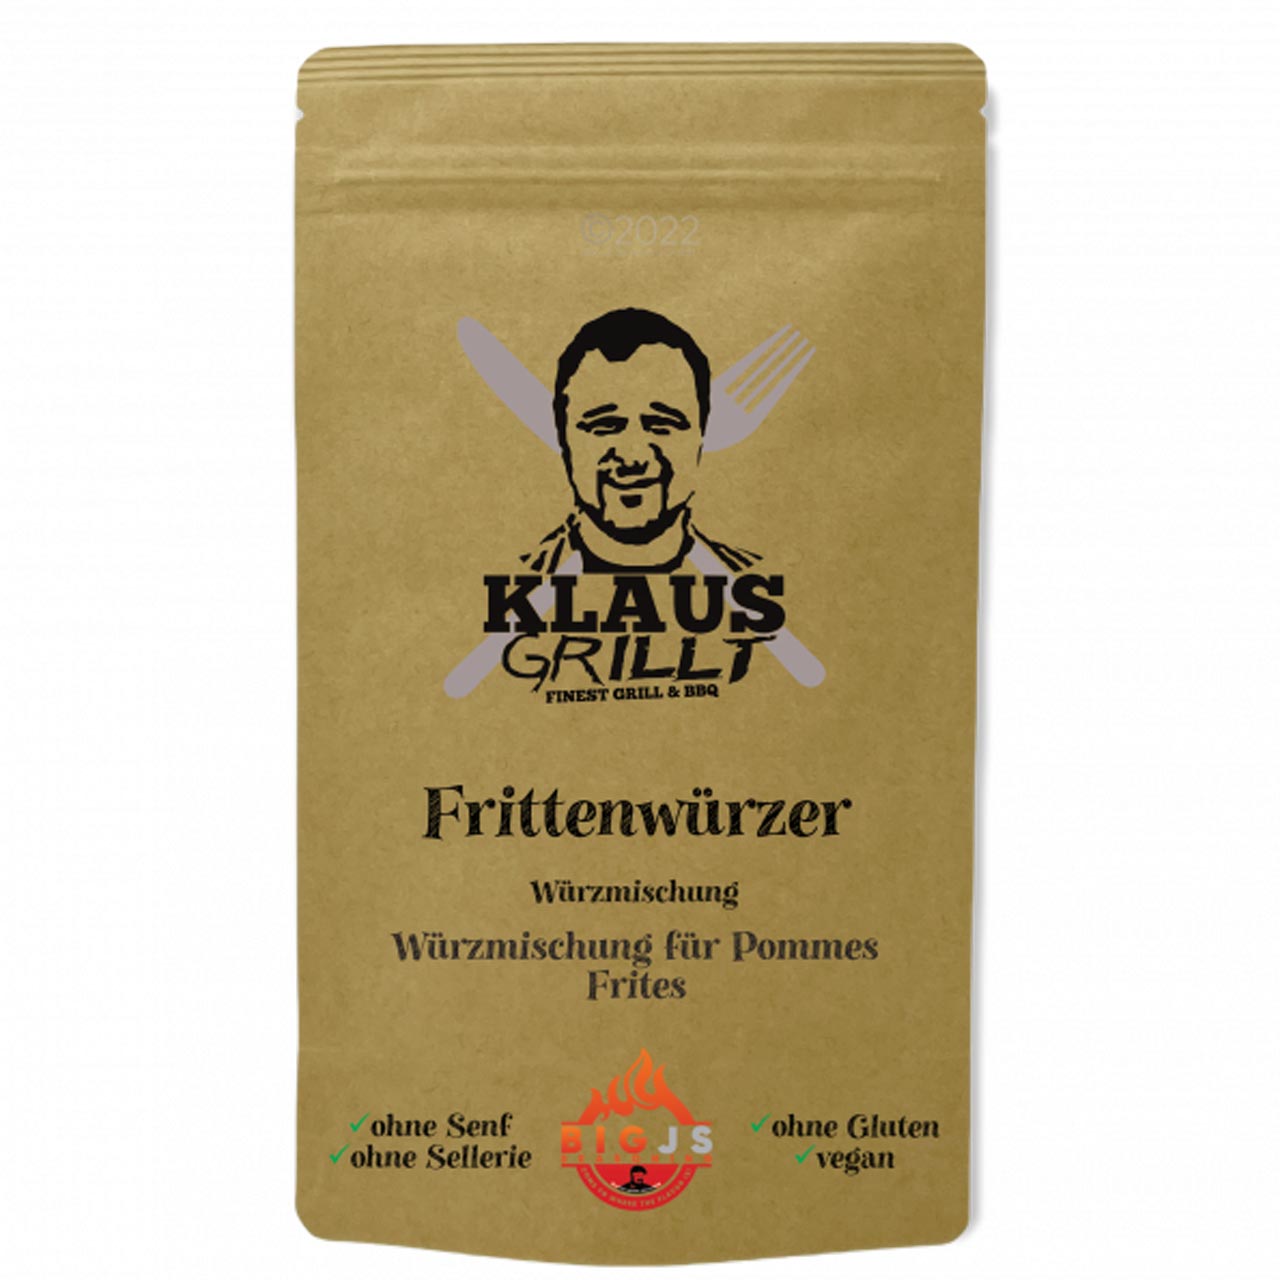 Klaus Grillt - Frittenwürzer 250 g Standbeutel